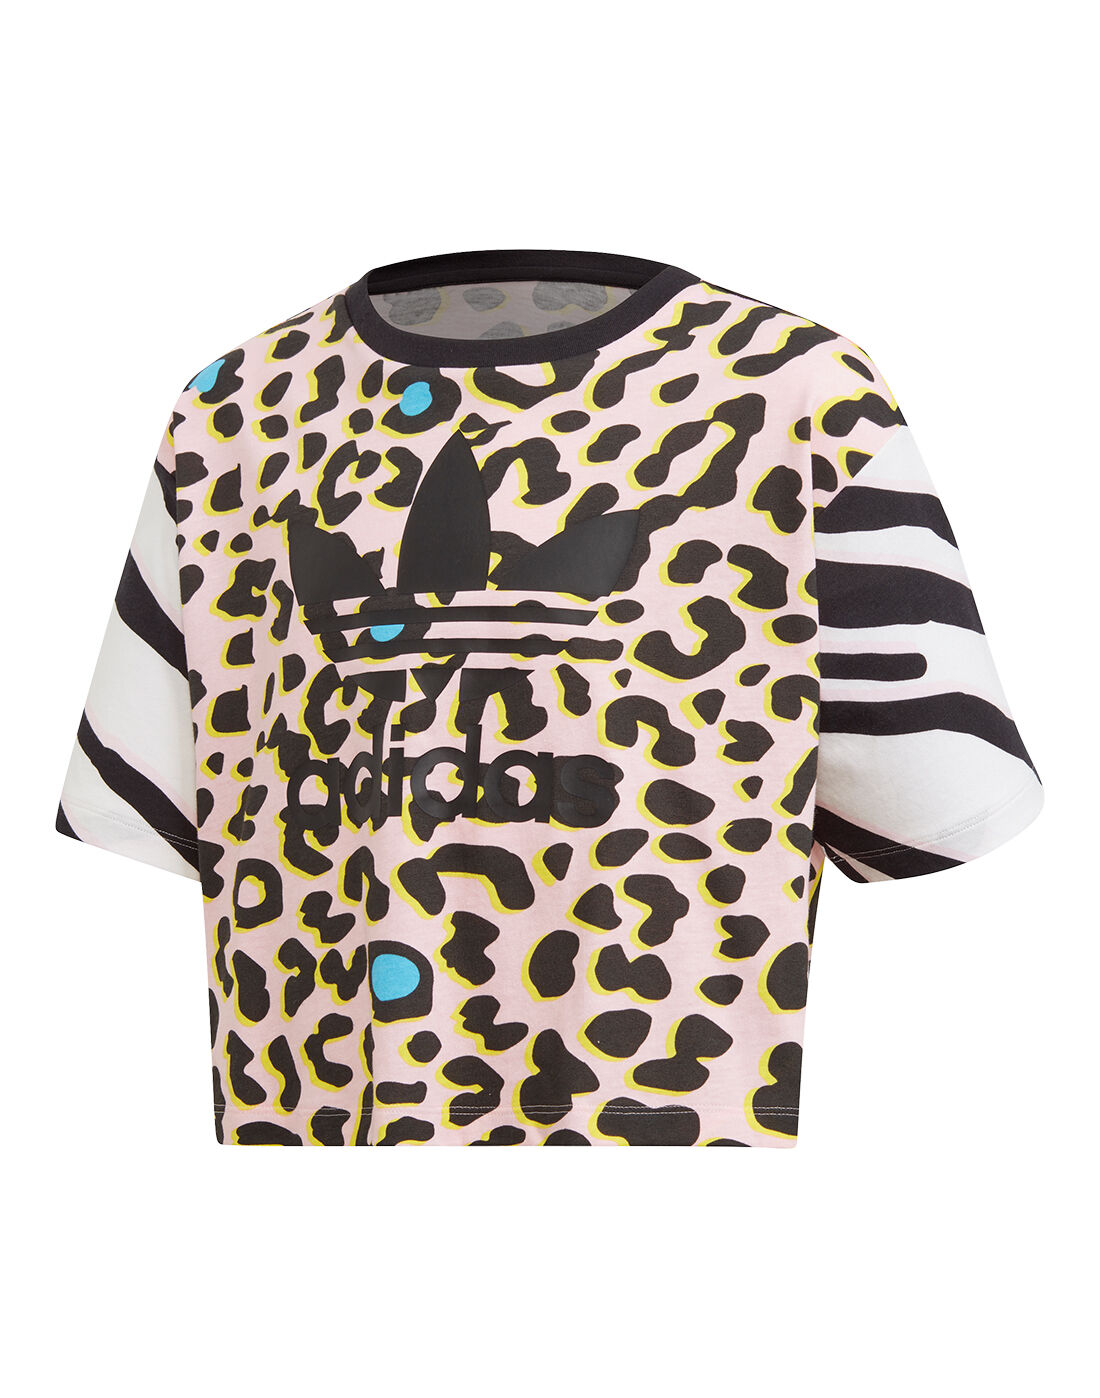 adidas t shirt leopard